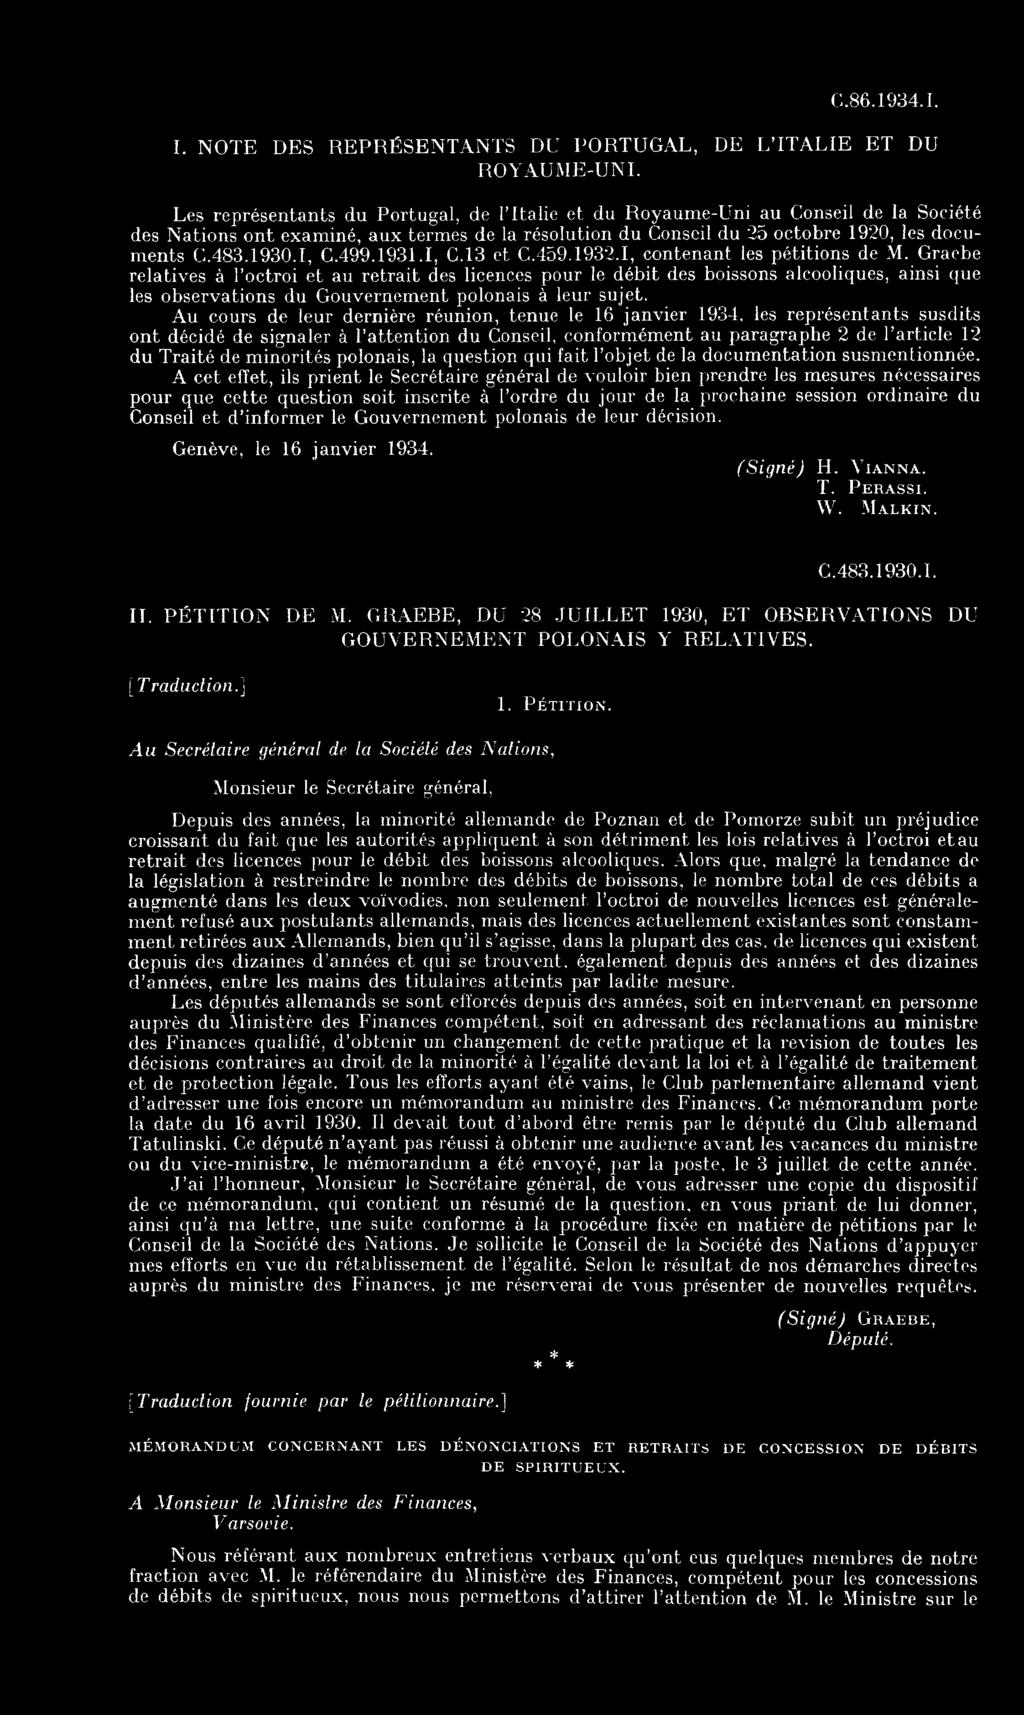 499.1931.1, C.13 et C.459.1932.1, contenant les pétitions de M.